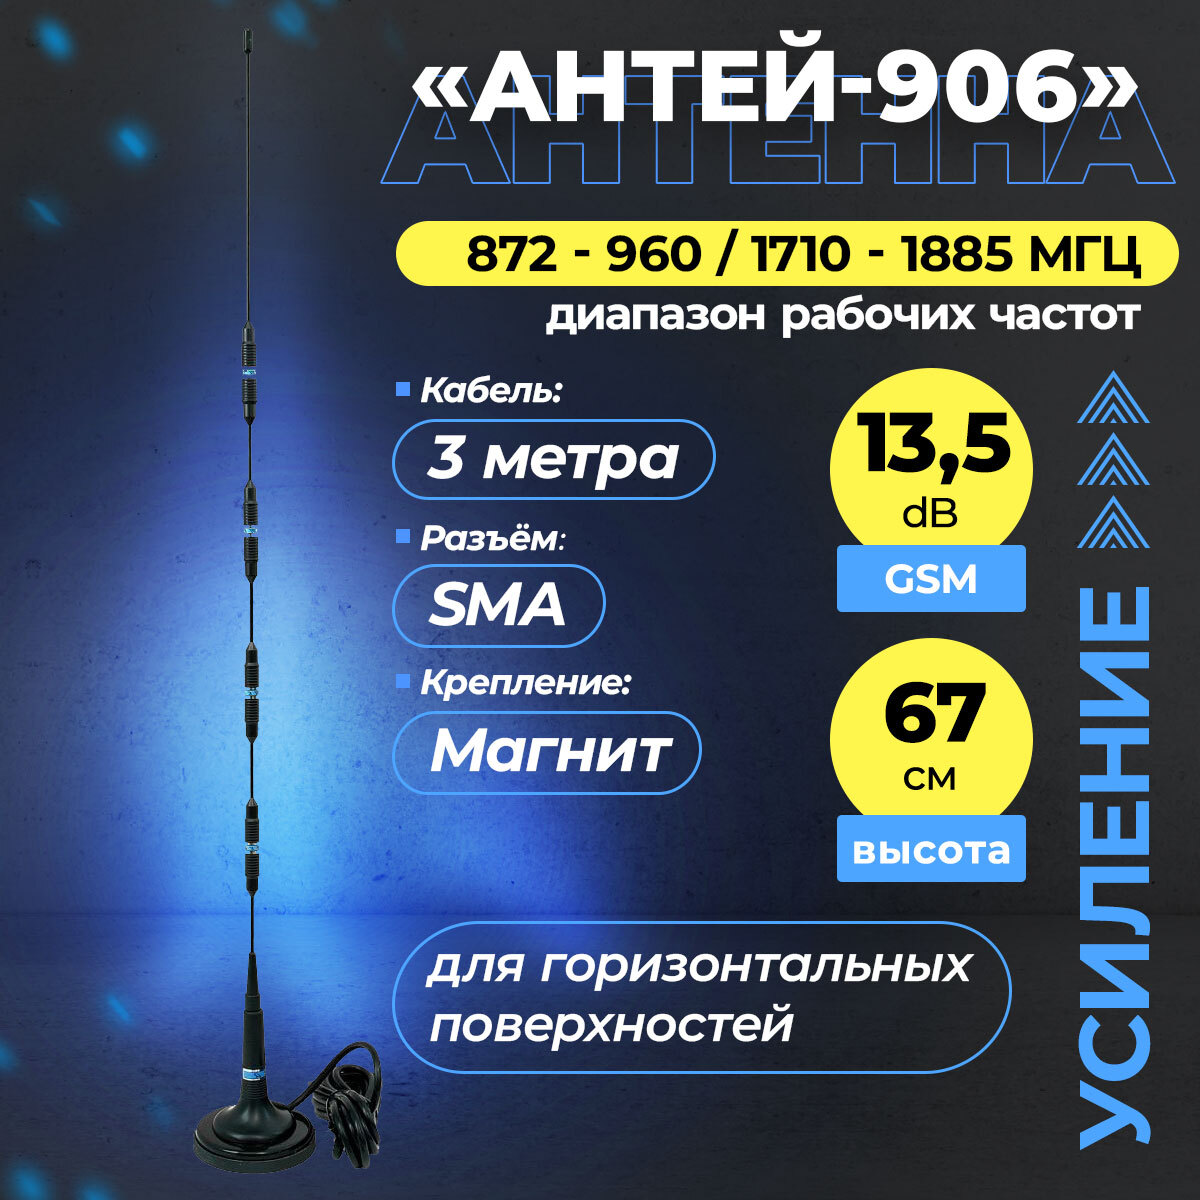 Антенна антей 906 sma 3м. GSM-антенна Antey 906. Антенна GSM Antey 906 sma. Антенна GSM Antey 906 13,5db sma. Антенна Антей 906 sma gsm900/1800 13,5дб.